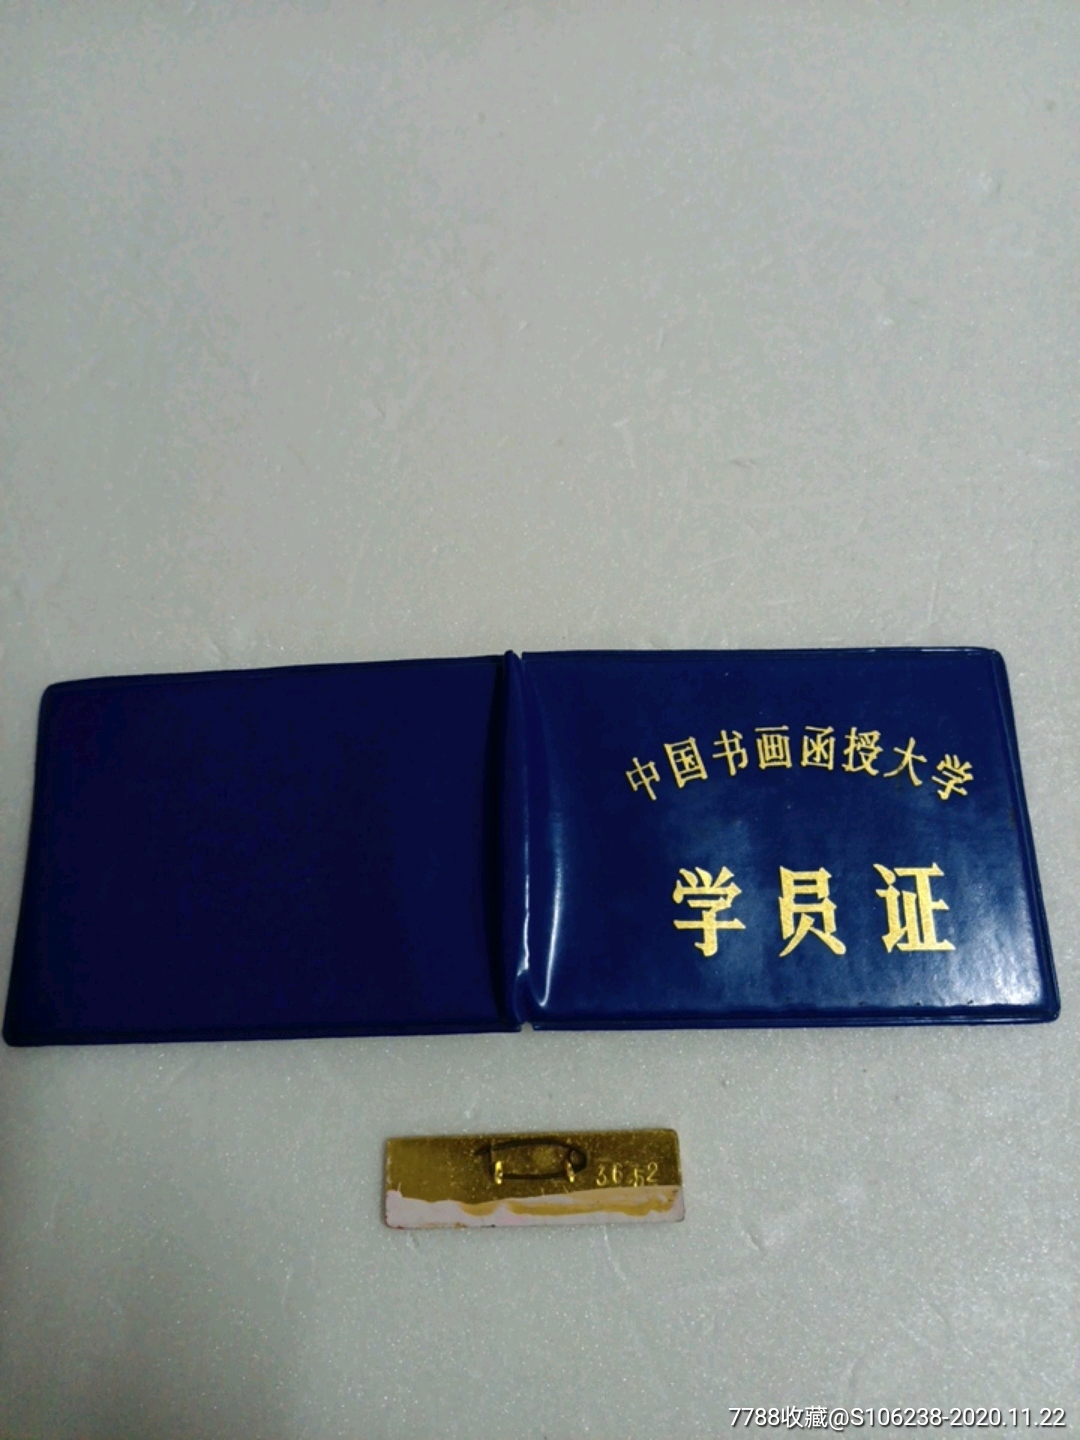 中国书画函授大学-学员证,校徽